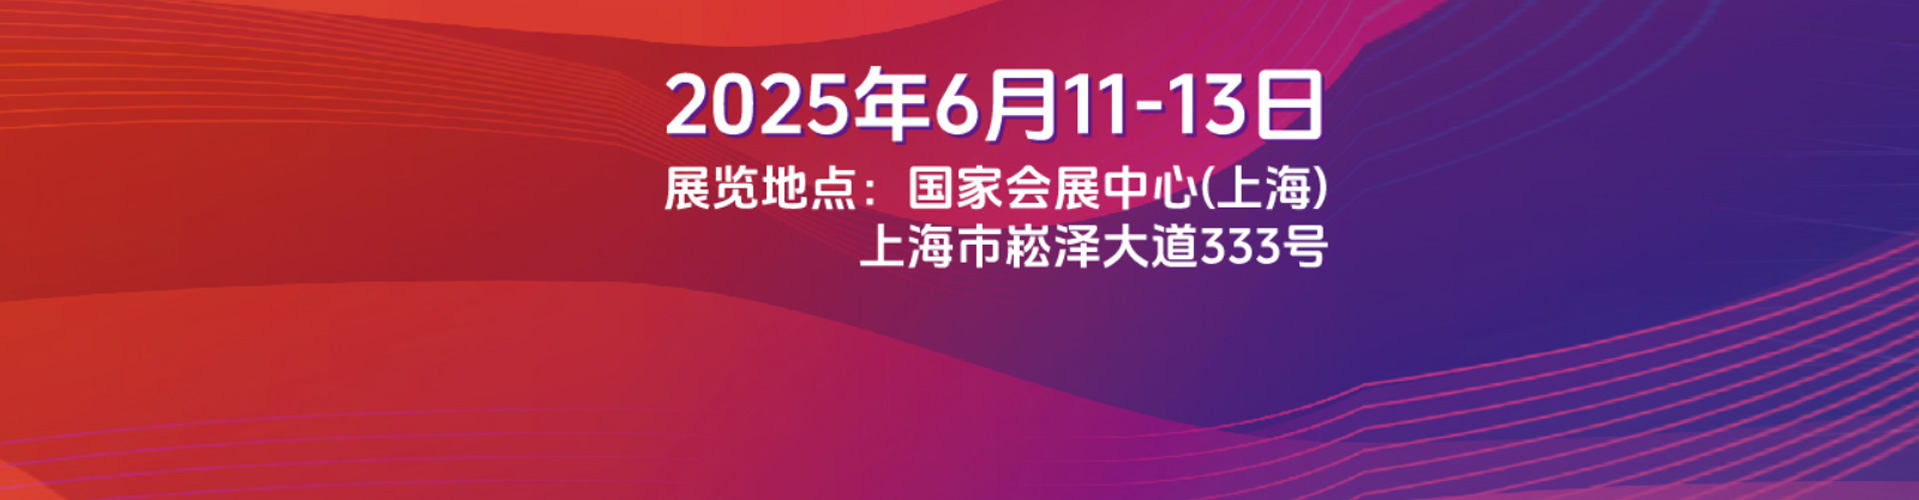 上海SNEC2020光伏展时间-太阳能光伏展订展位报名-光伏储能展「组委会专业办理」